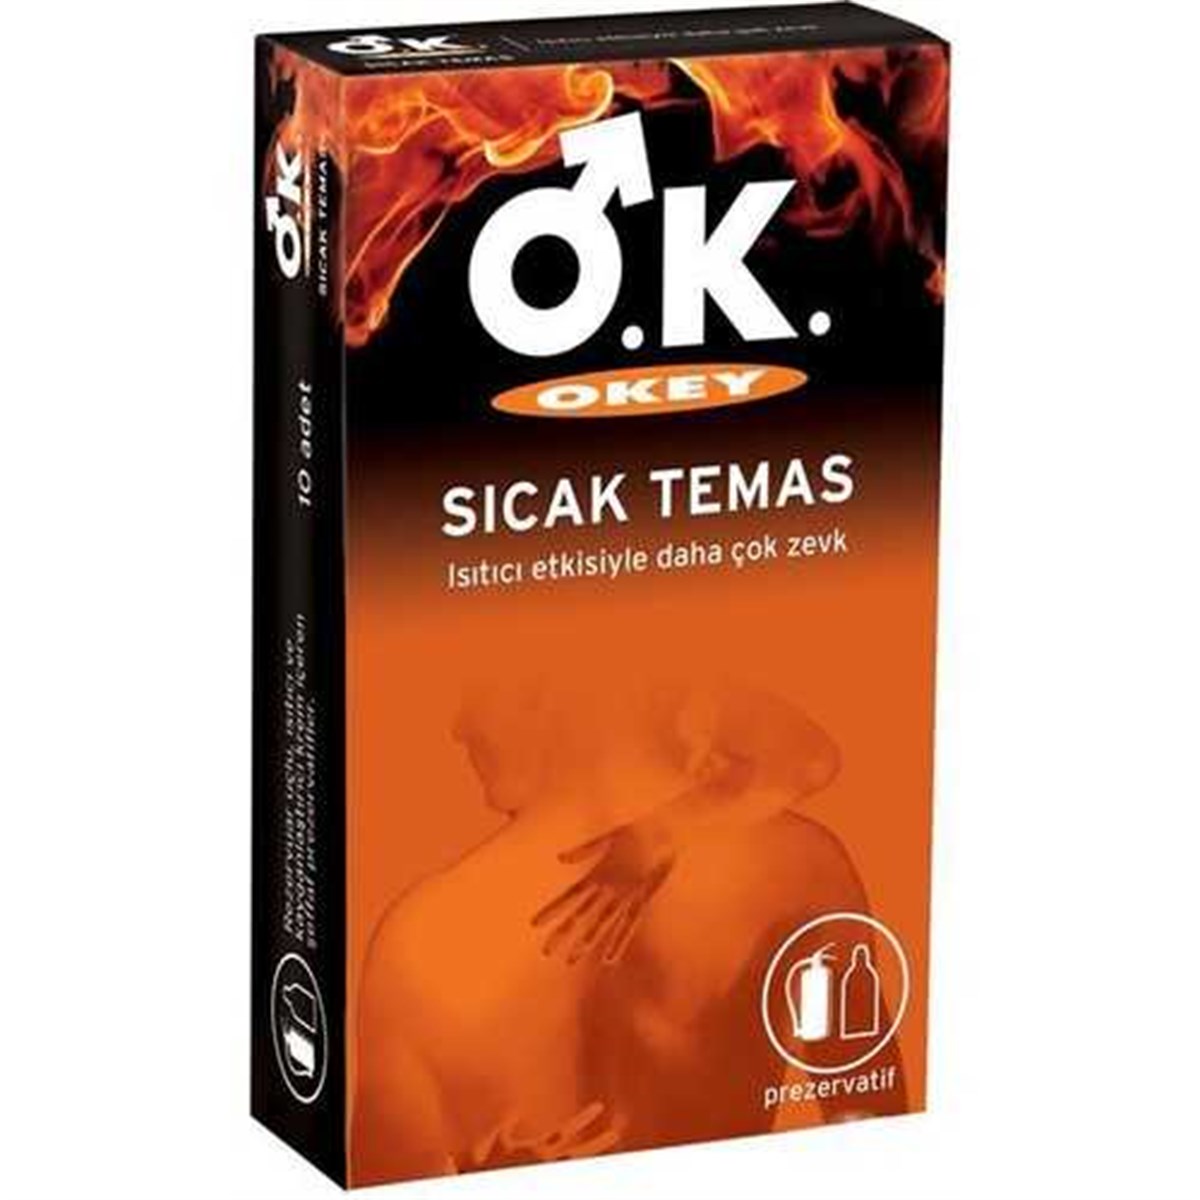 Okey Sıcak Temas Prezervatif 10 adet Fiyatları | Dermosiparis.com